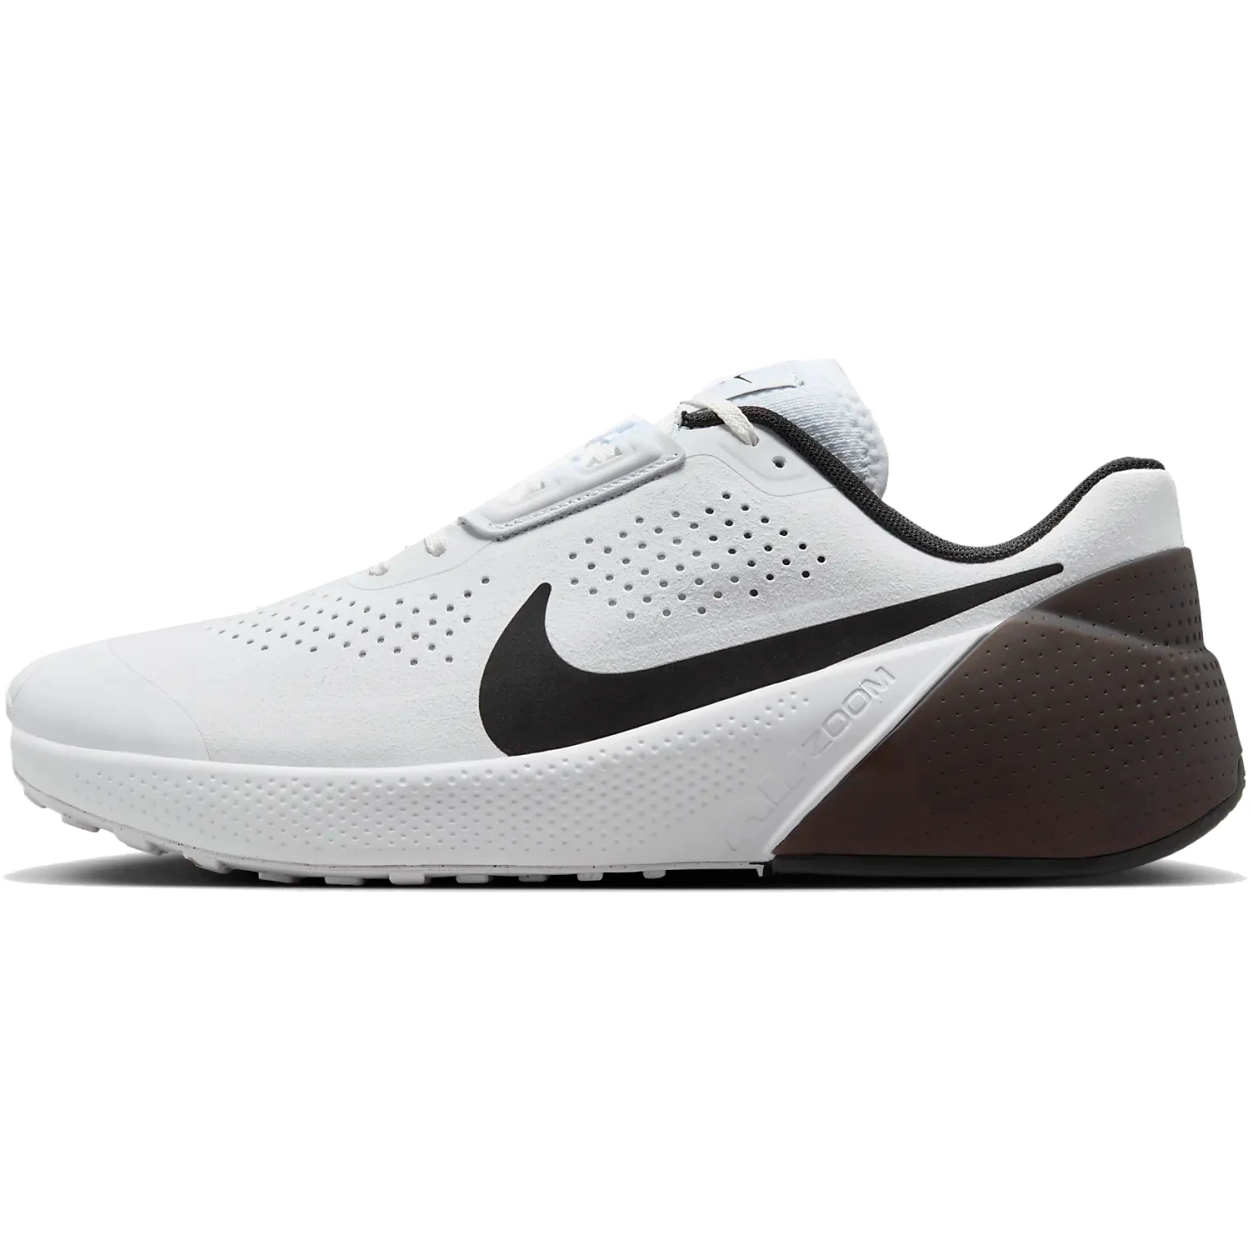 Produktbild von Nike Air Zoom TR 1 Workout-Schuhe Herren - weiß/schwarz DX9016-103